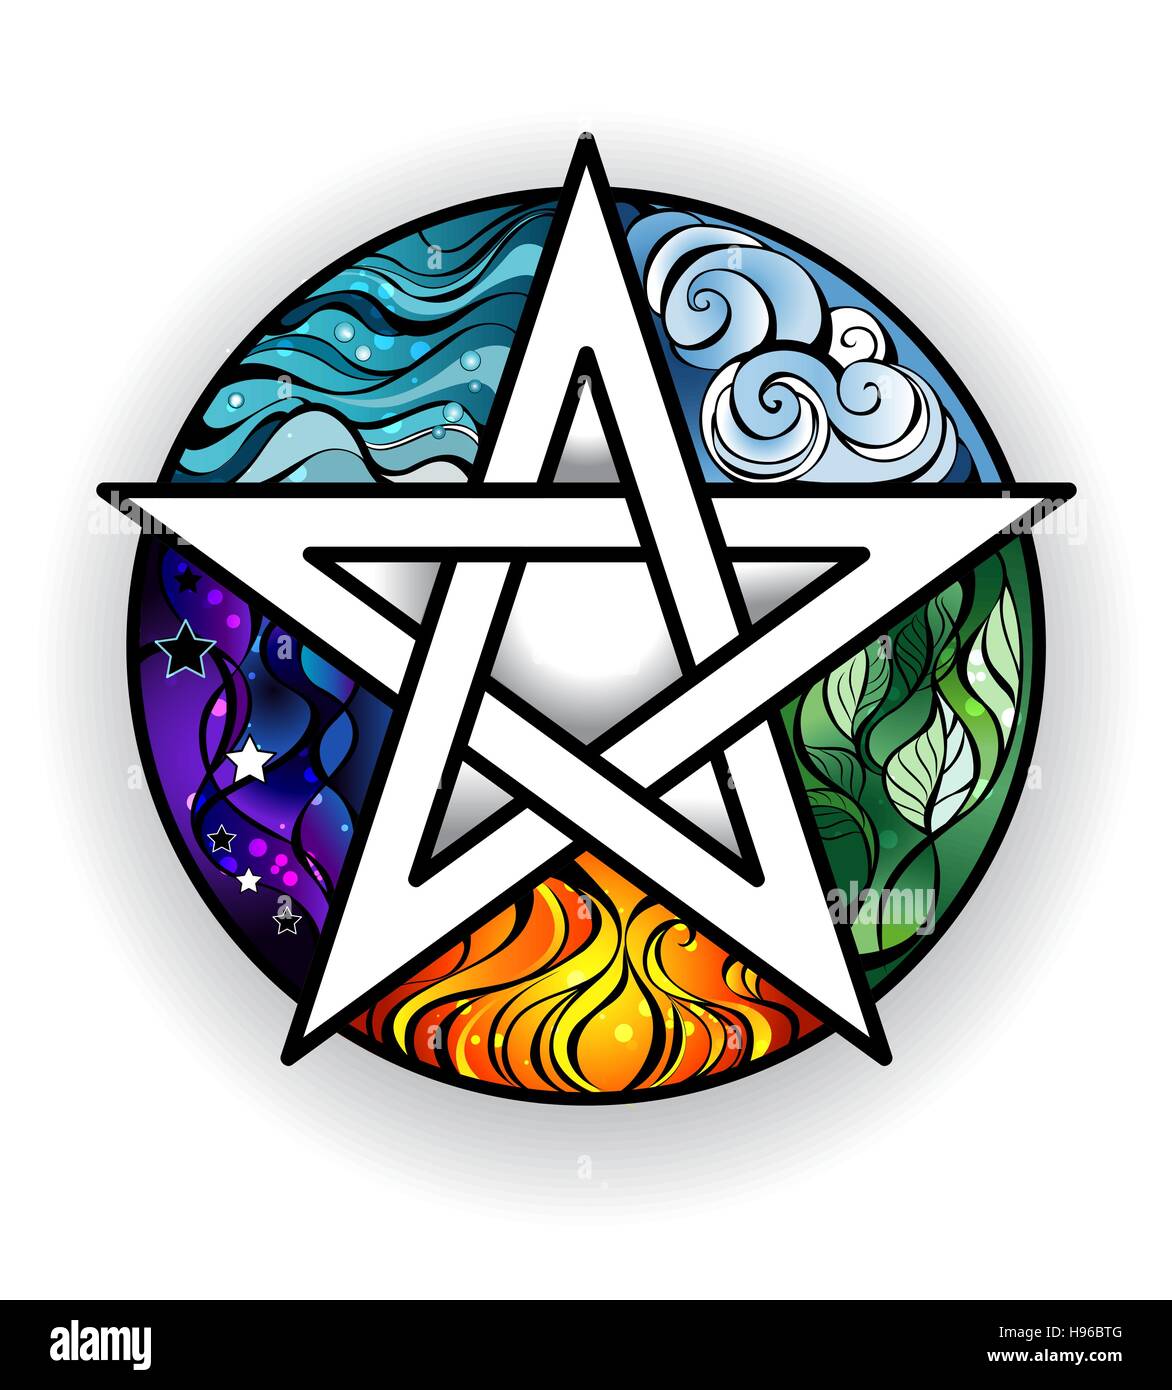 kunstvoll bemalte magische Pentagramm mit Elementen Wasser, Erde, Luft, Feuer, astral, auf einem weißen Hintergrund. Tattoo-Stil. Magisches Symbol. Stock Vektor